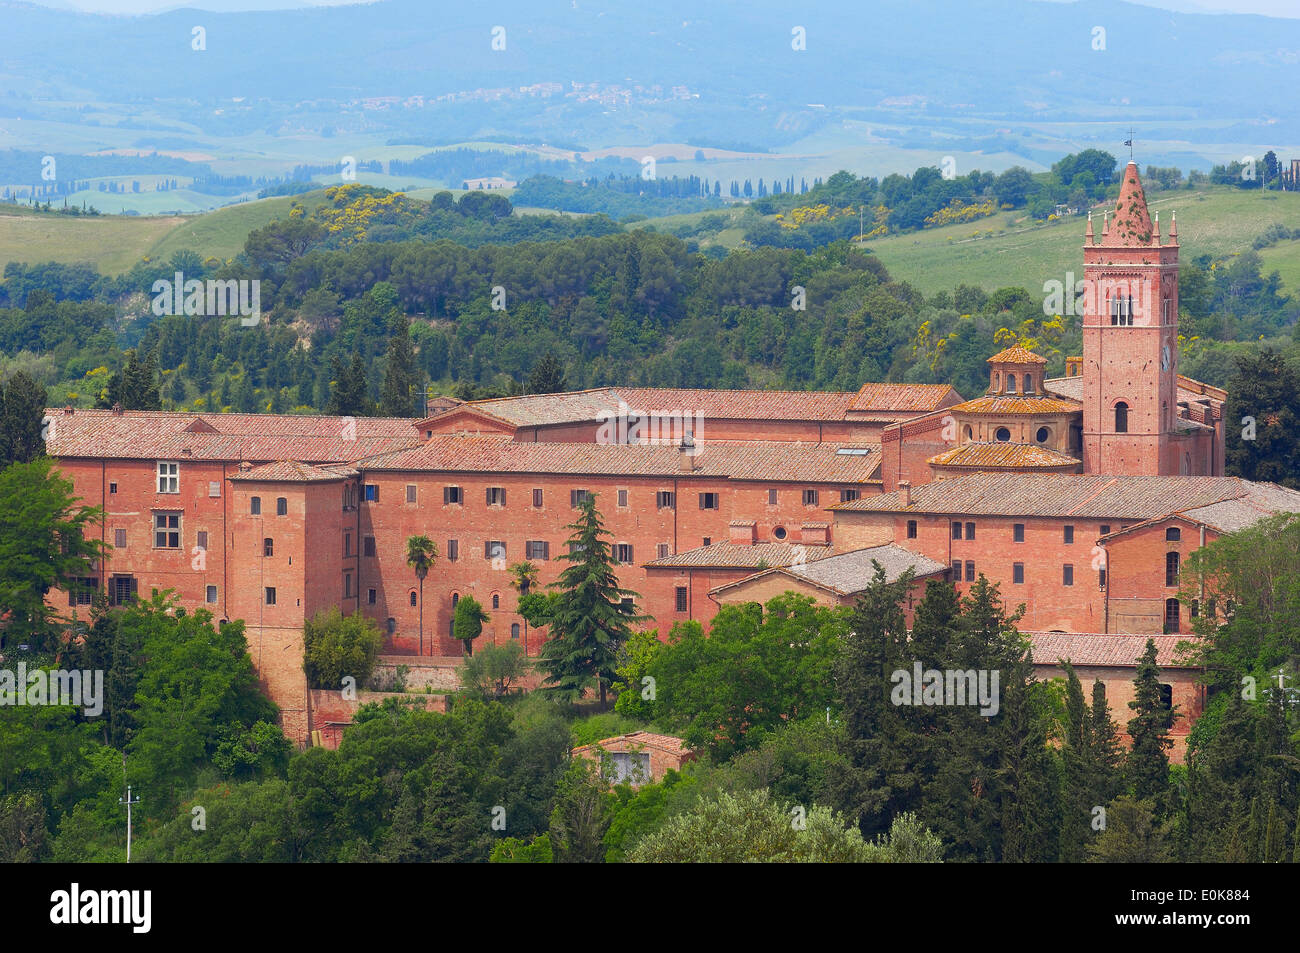 Monte oliveto Maggiore, Abbey of Monte Oliveto Maggiore, Asciano, Siena  Province, Crete Senesi, Tuscany, Italy, Europe Stock Photo - Alamy